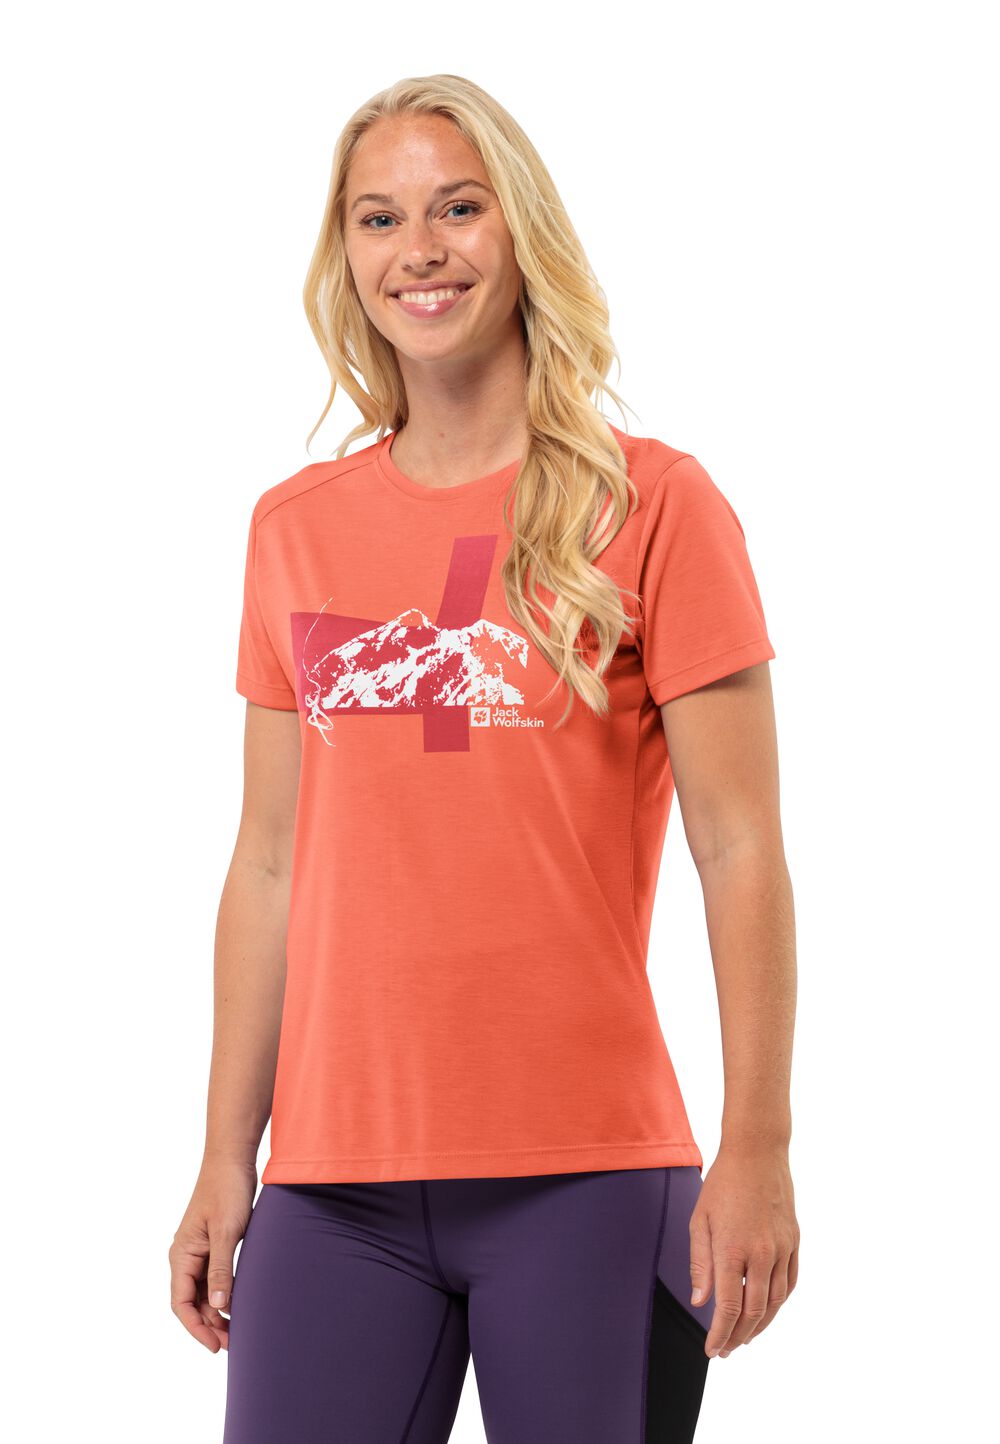 Jack Wolfskin Vonnan S S Graphic T-Shirt Women Functioneel shirt Dames S rood digital orange